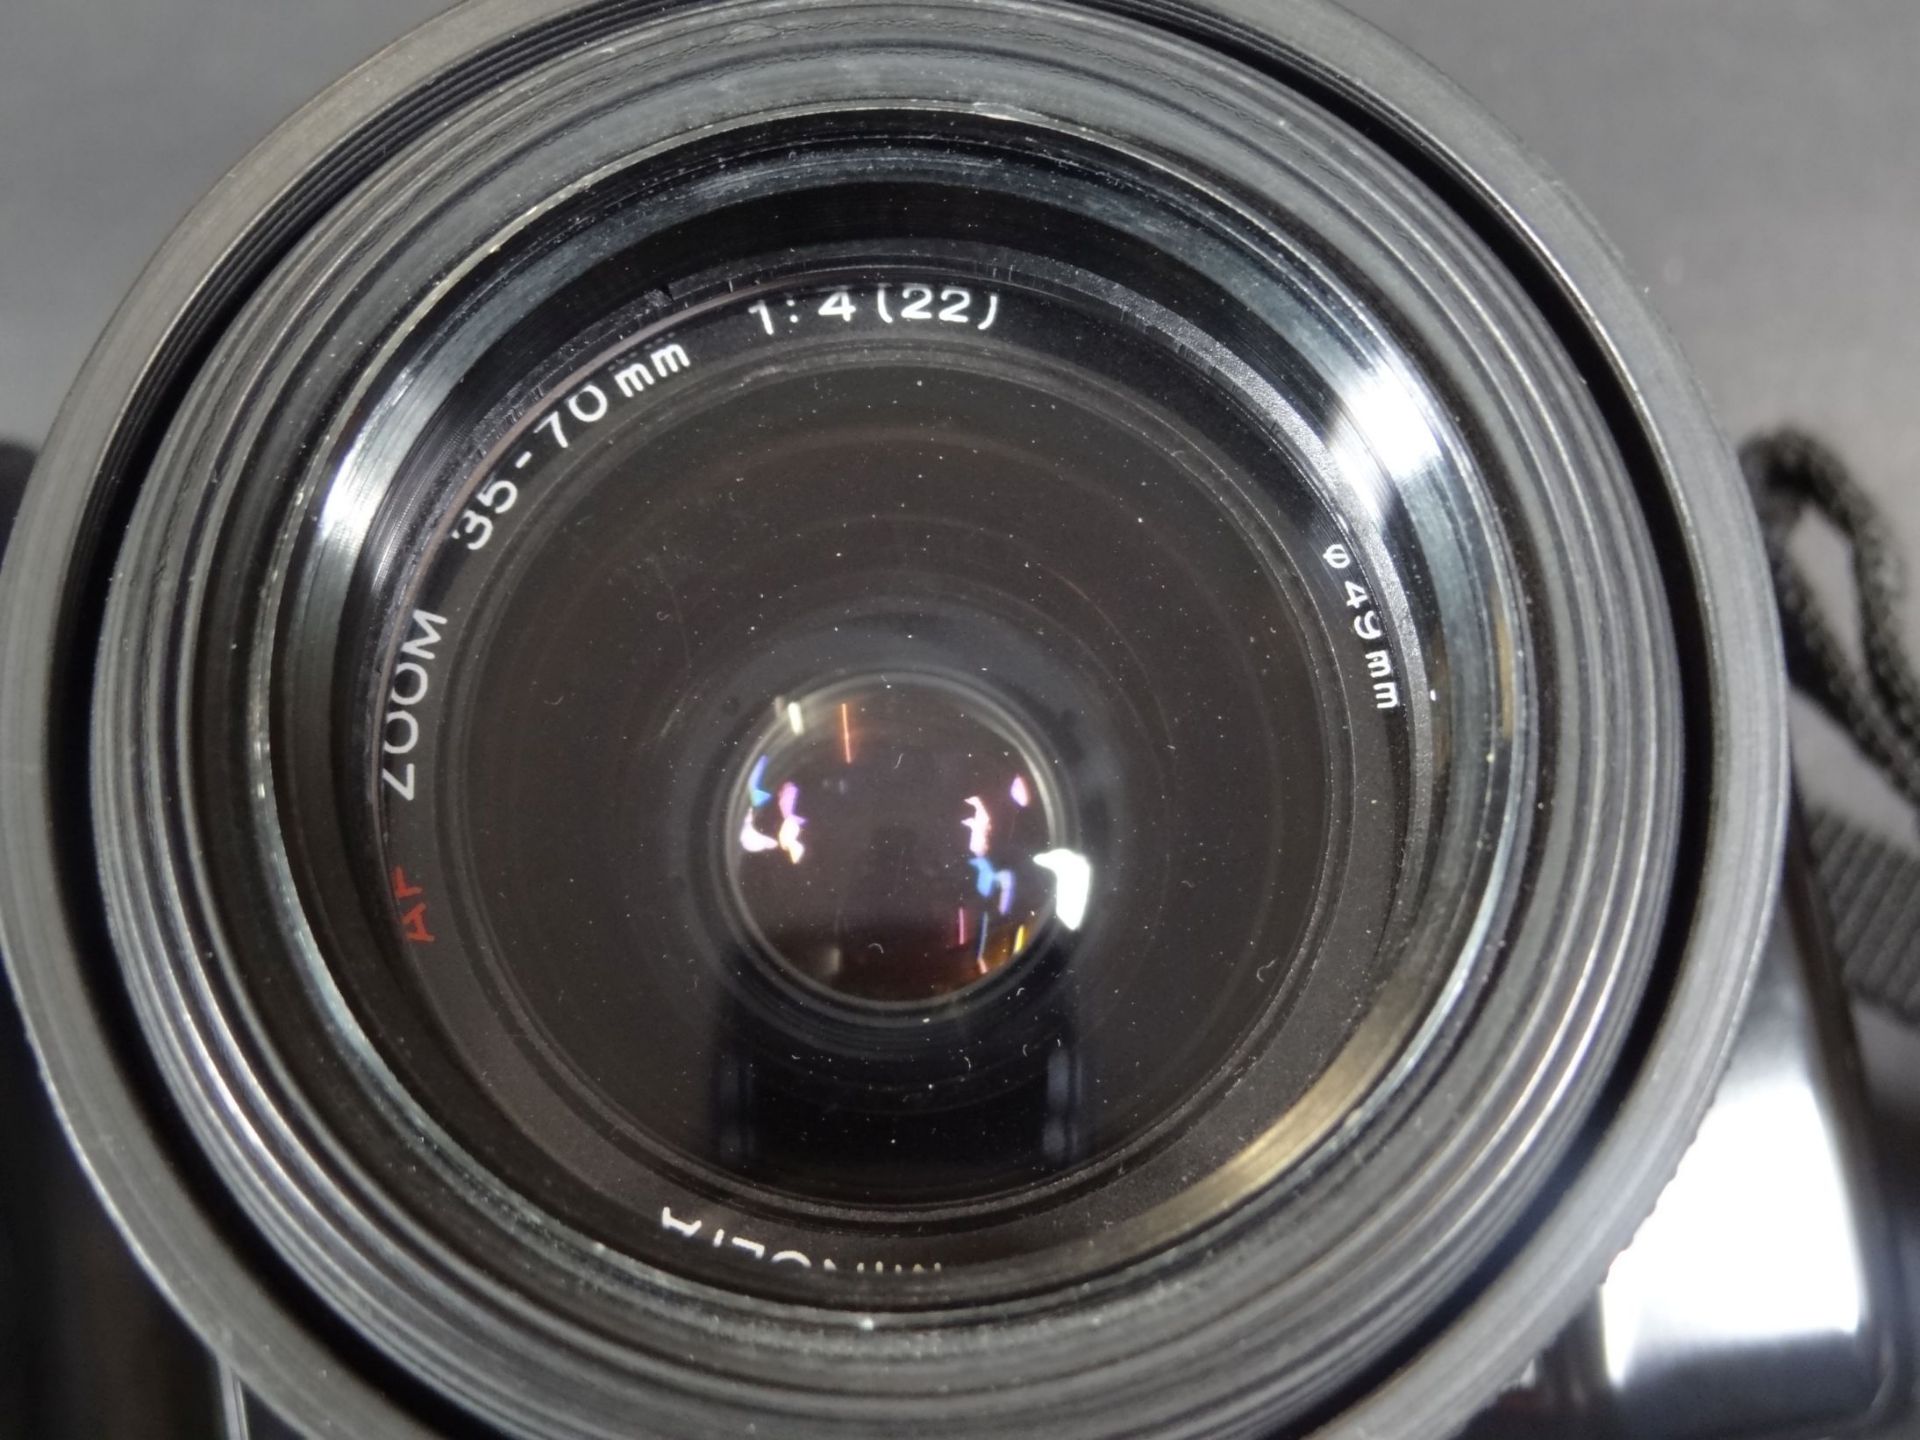 Spiegelreflex-Kamera "Minolta Dynax 7000" in Tasche mit Zubehö- - -22.61 % buyer's premium on the - Bild 4 aus 7